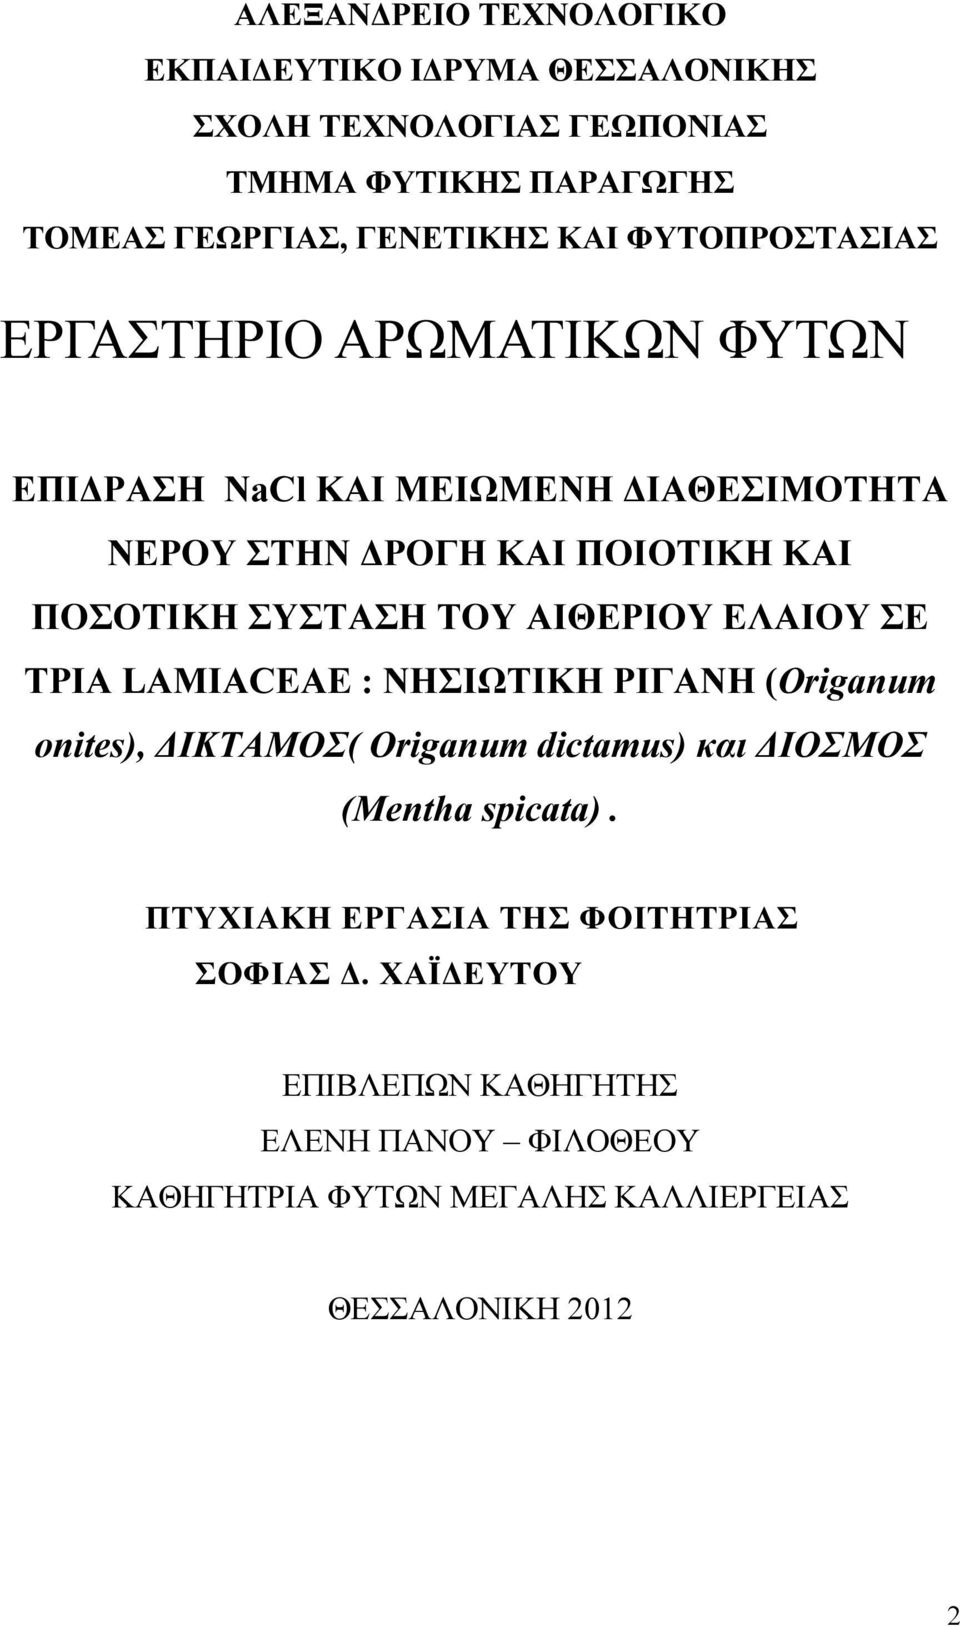 ΤΟΥ ΑΙΘΕΡΙΟΥ ΕΛΑΙΟΥ ΣΕ ΤΡΙΑ LAMIACEAE : ΝΗΣΙΩΤΙΚΗ ΡΙΓΑΝΗ (Origanum onites), ΙΚΤΑΜΟΣ( Origanum dictamus) και ΙΟΣΜΟΣ (Mentha spicata).